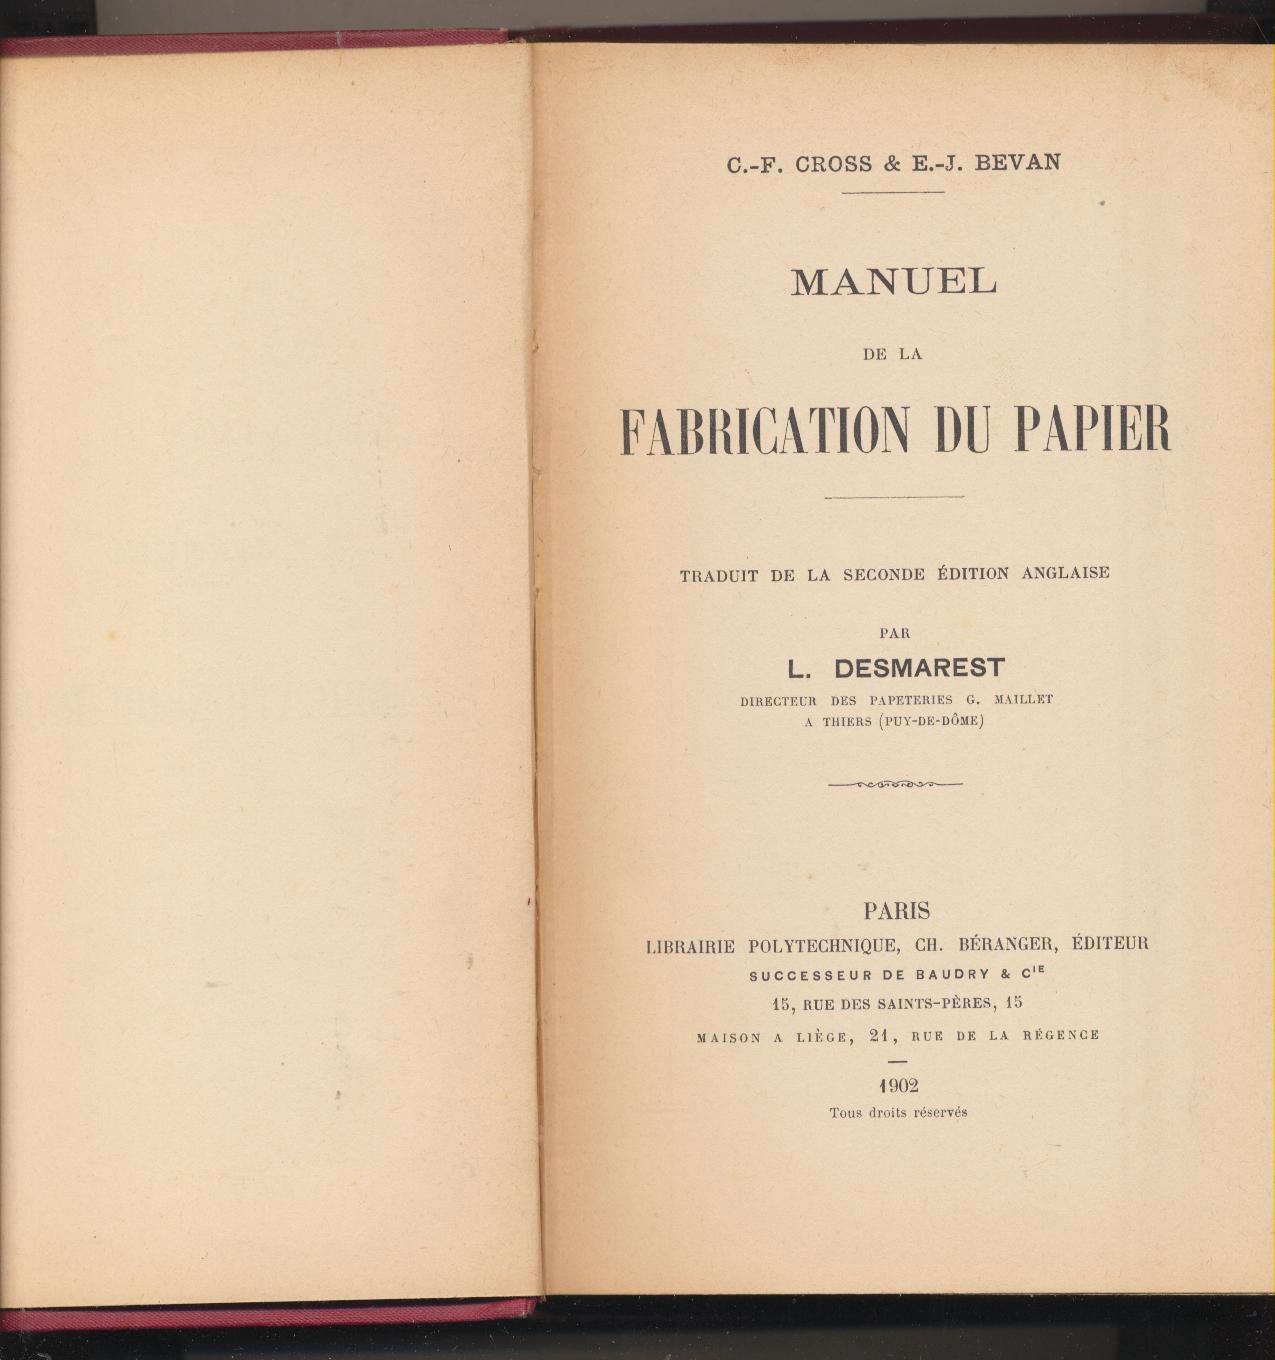 C. F. Cross & E. J. Bevan. Manuel de la Fabrication du Papier. Paris 1902